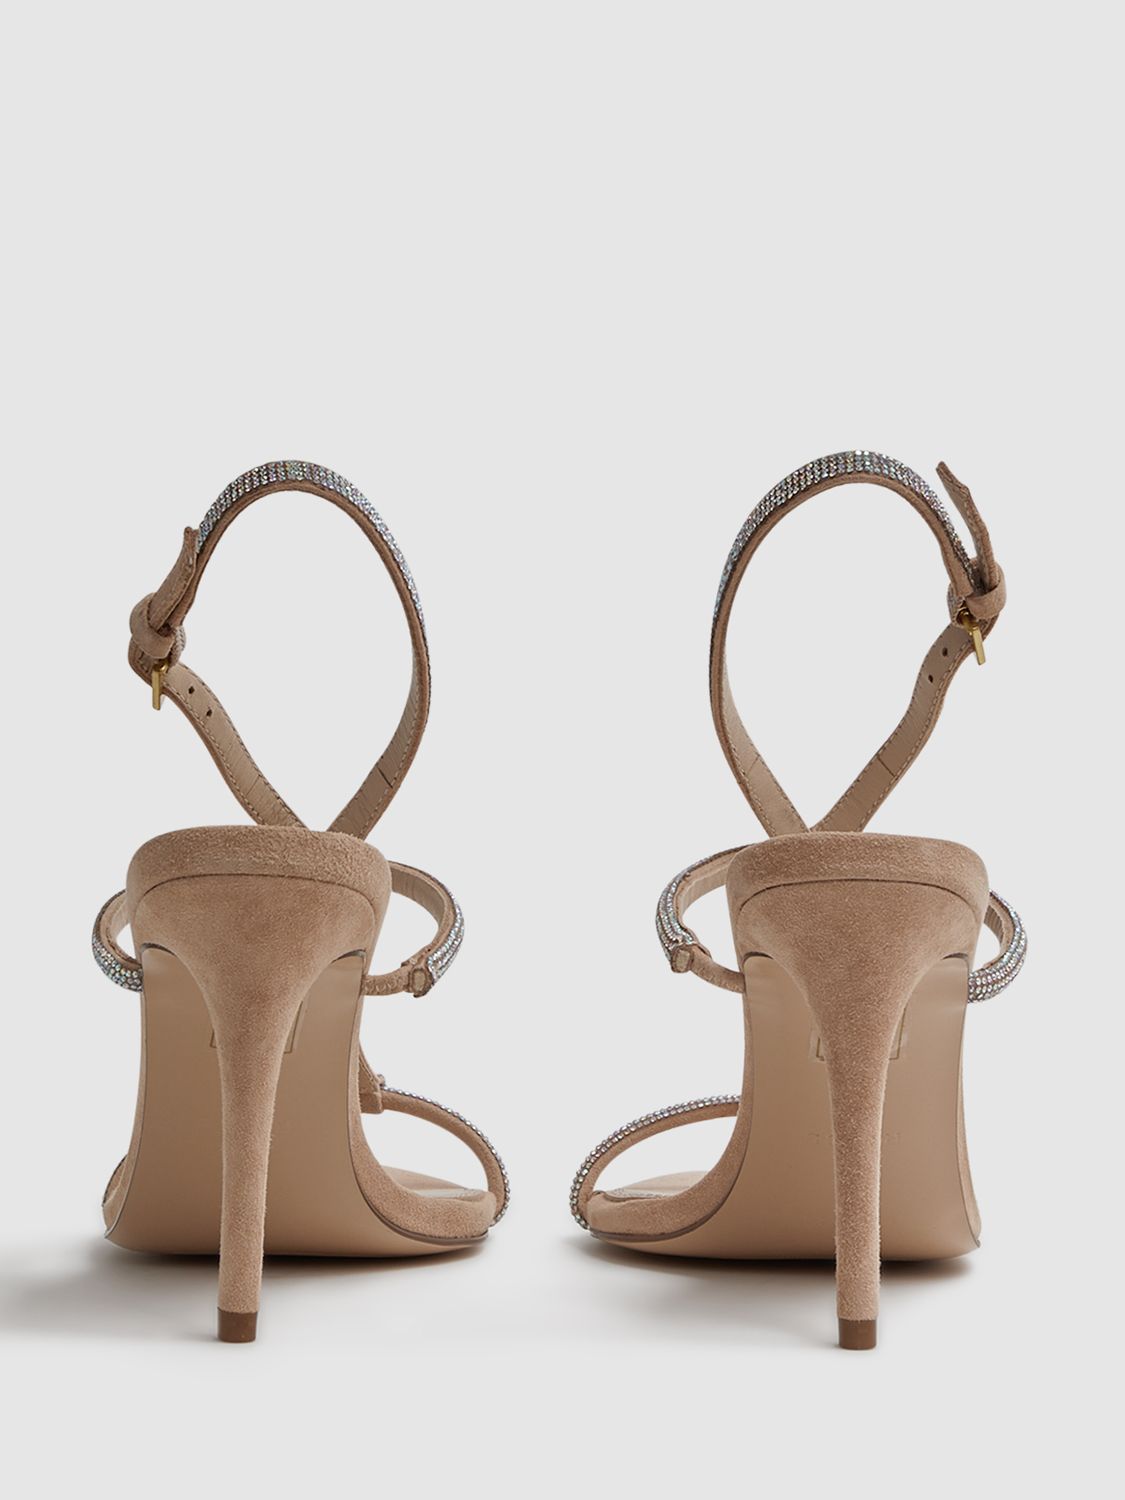 Buy Reiss Julie Embellished High Heeled Sandals, Nude Online at johnlewis.com